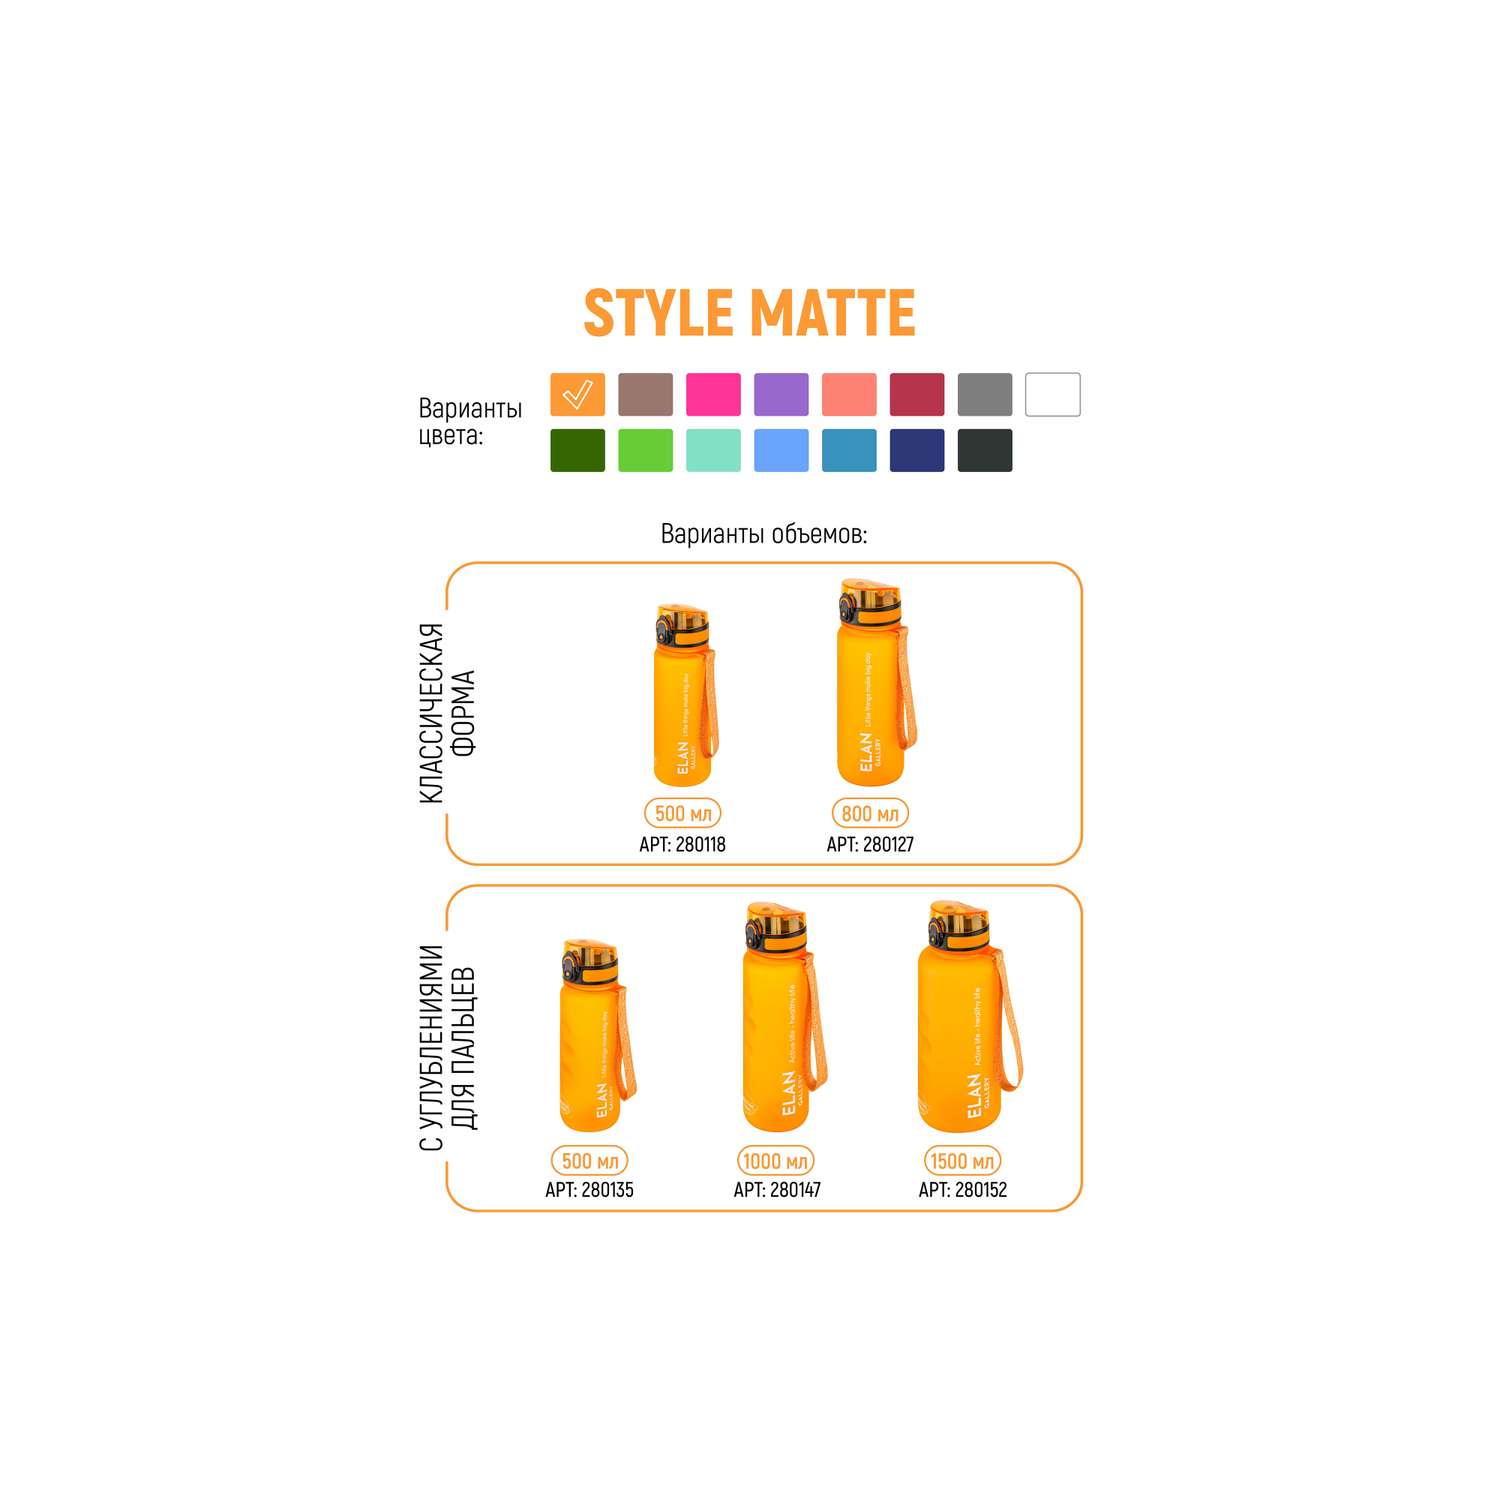 Бутылка для воды Elan Gallery 1.5 л Style Matte оранжевая - фото 9